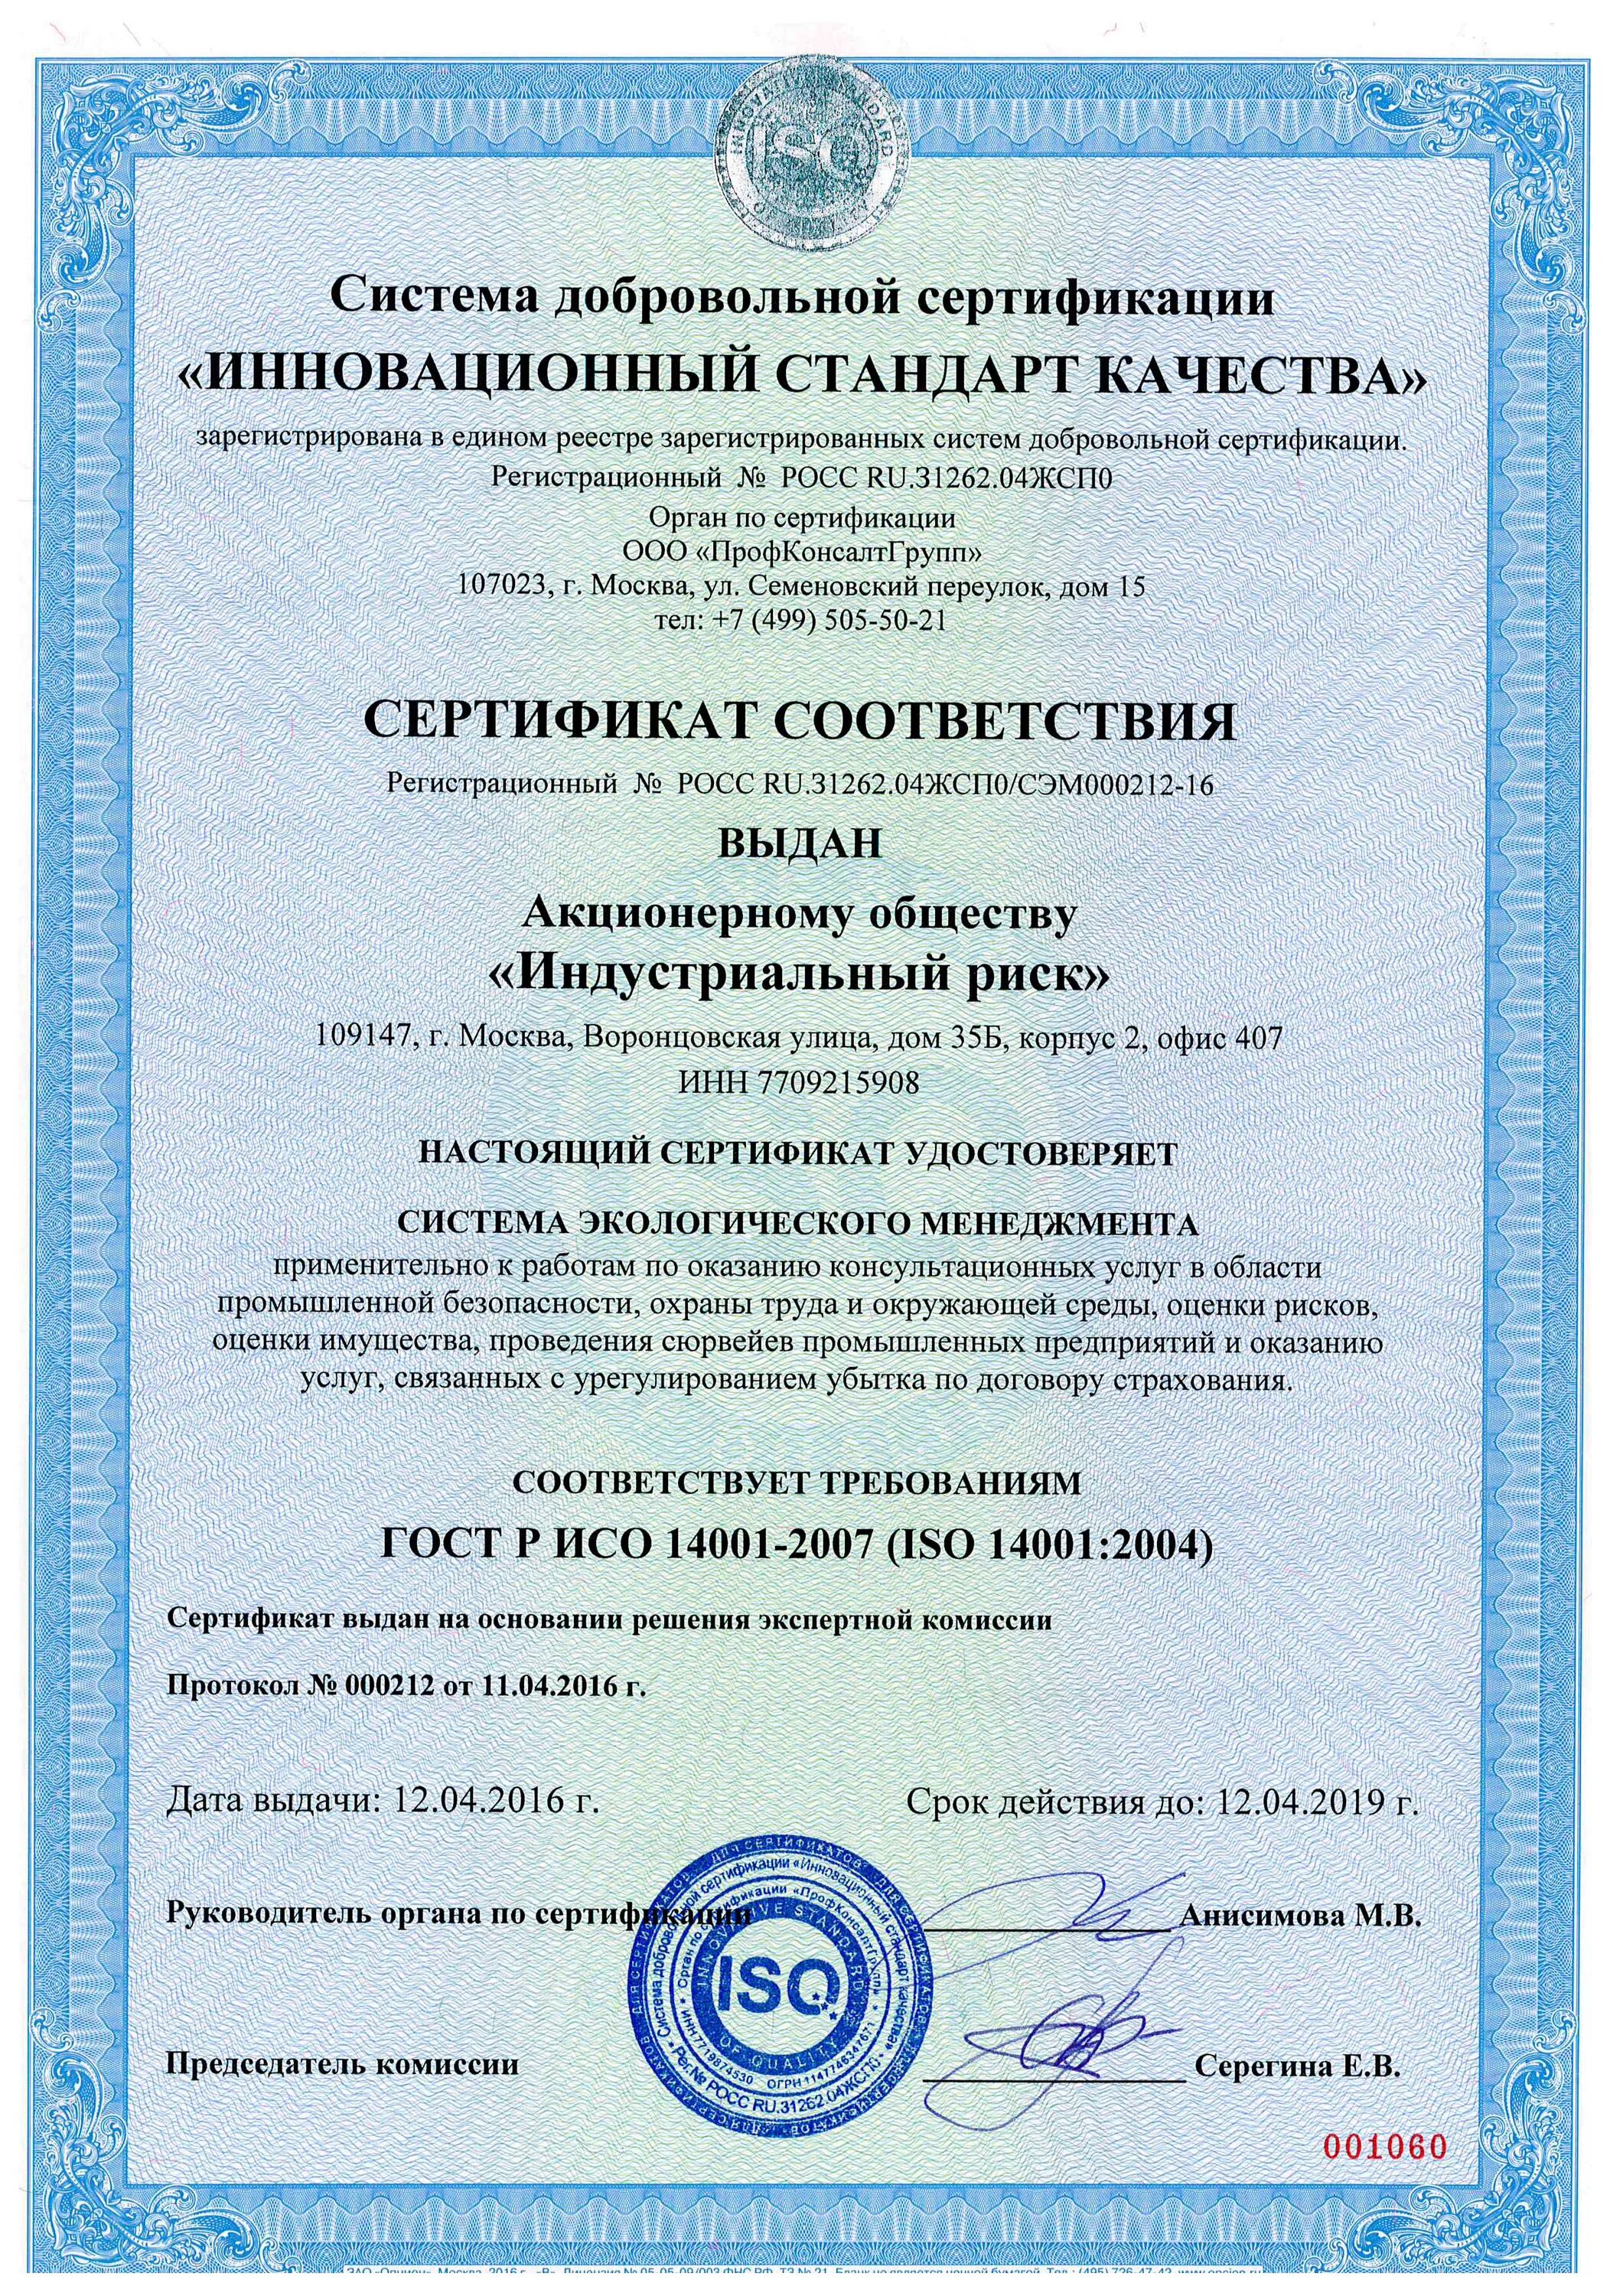 Сертификация систем менеджмента стандарт. Сертификат соответствия ISO 14001:2004. ИСО 14001-2016 система экологического менеджмента. ИСО 14001-2016 система экологического менеджмента сертификат. Сертификат системы экологического менеджмента ISO 14001:2007.